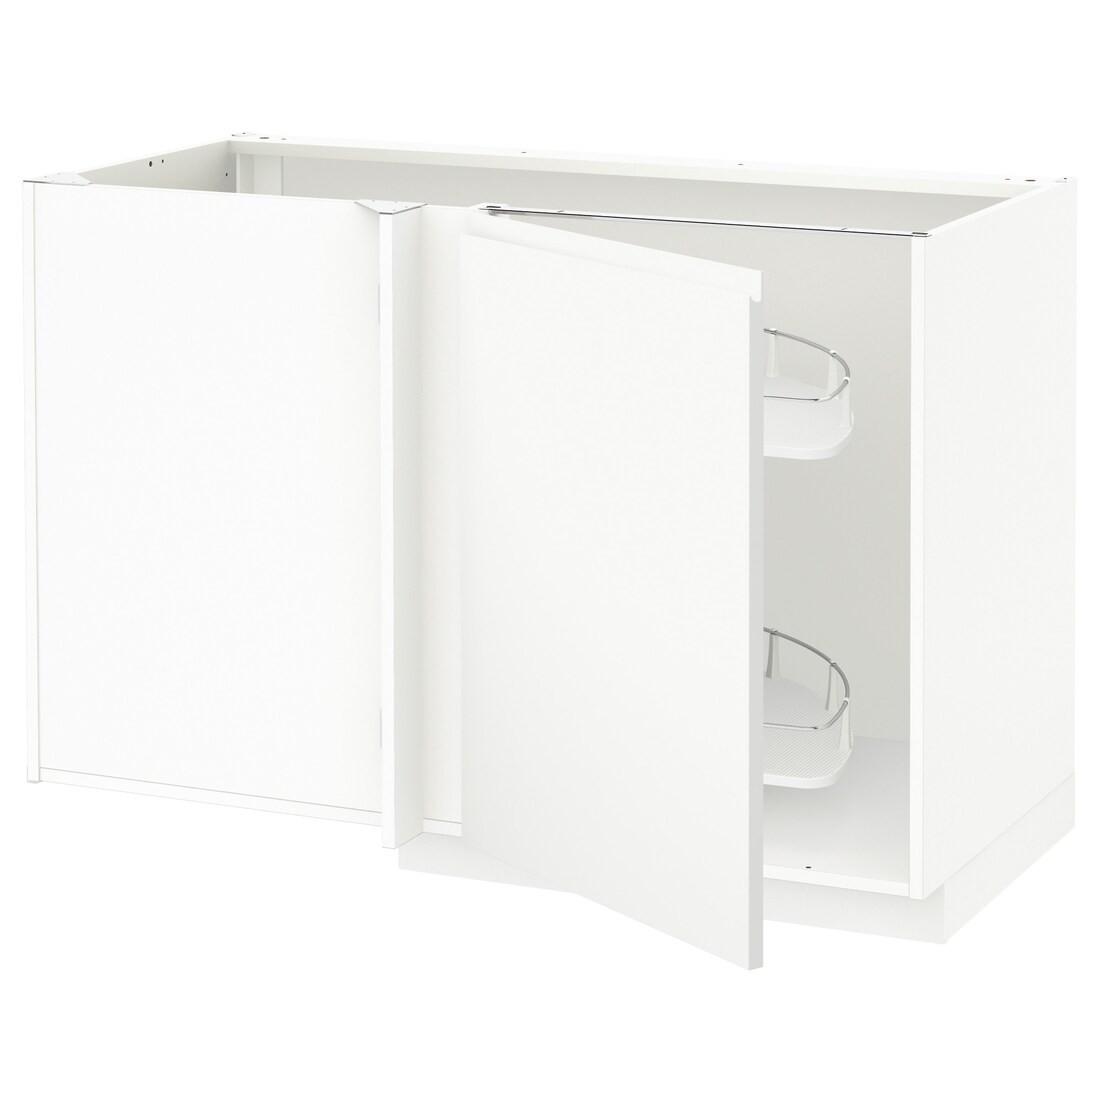 IKEA METOD МЕТОД Угловой напольный шкаф с выдвижной секцией, белый / Voxtorp матовый белый, 128x68 см 59461419 | 594.614.19